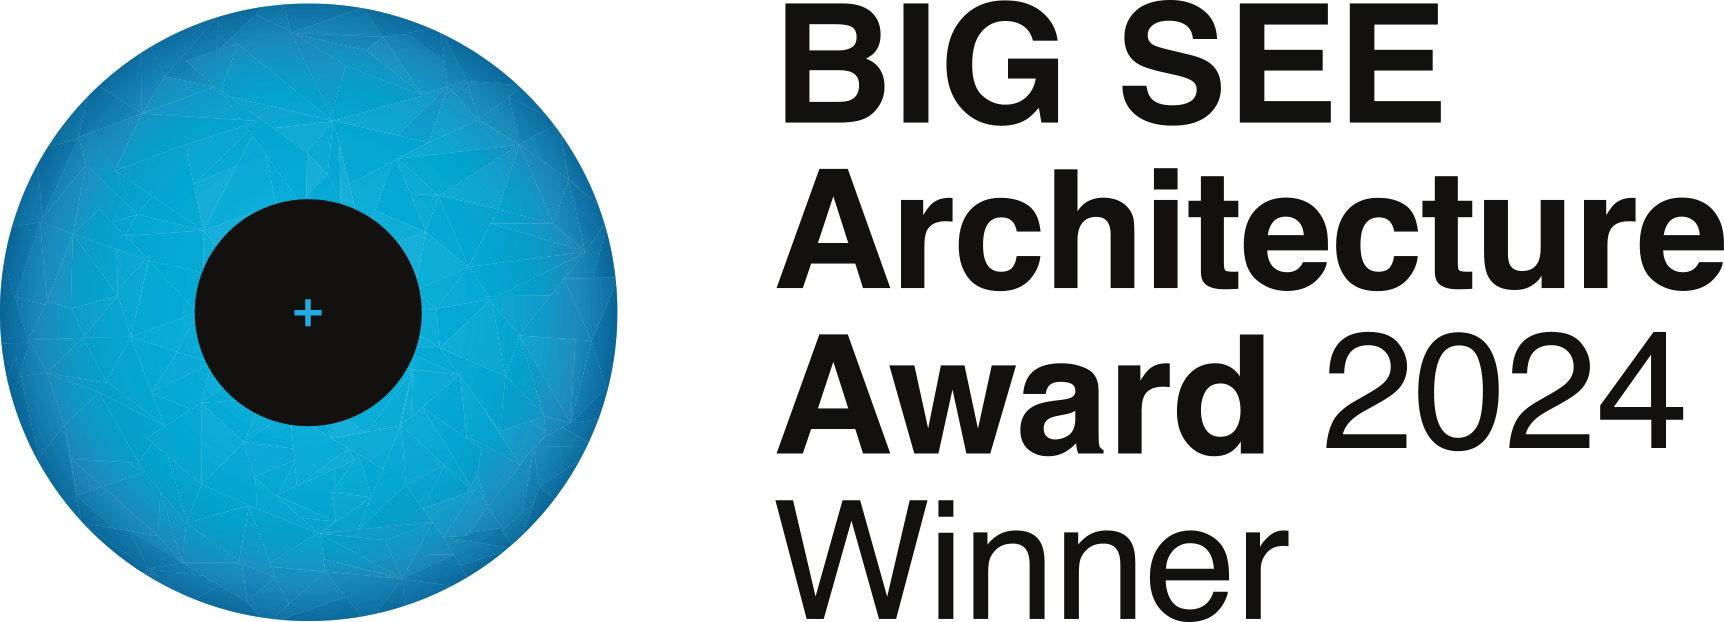 BIG SEE Architecture Award 2024 - Winner_ffm-architekten